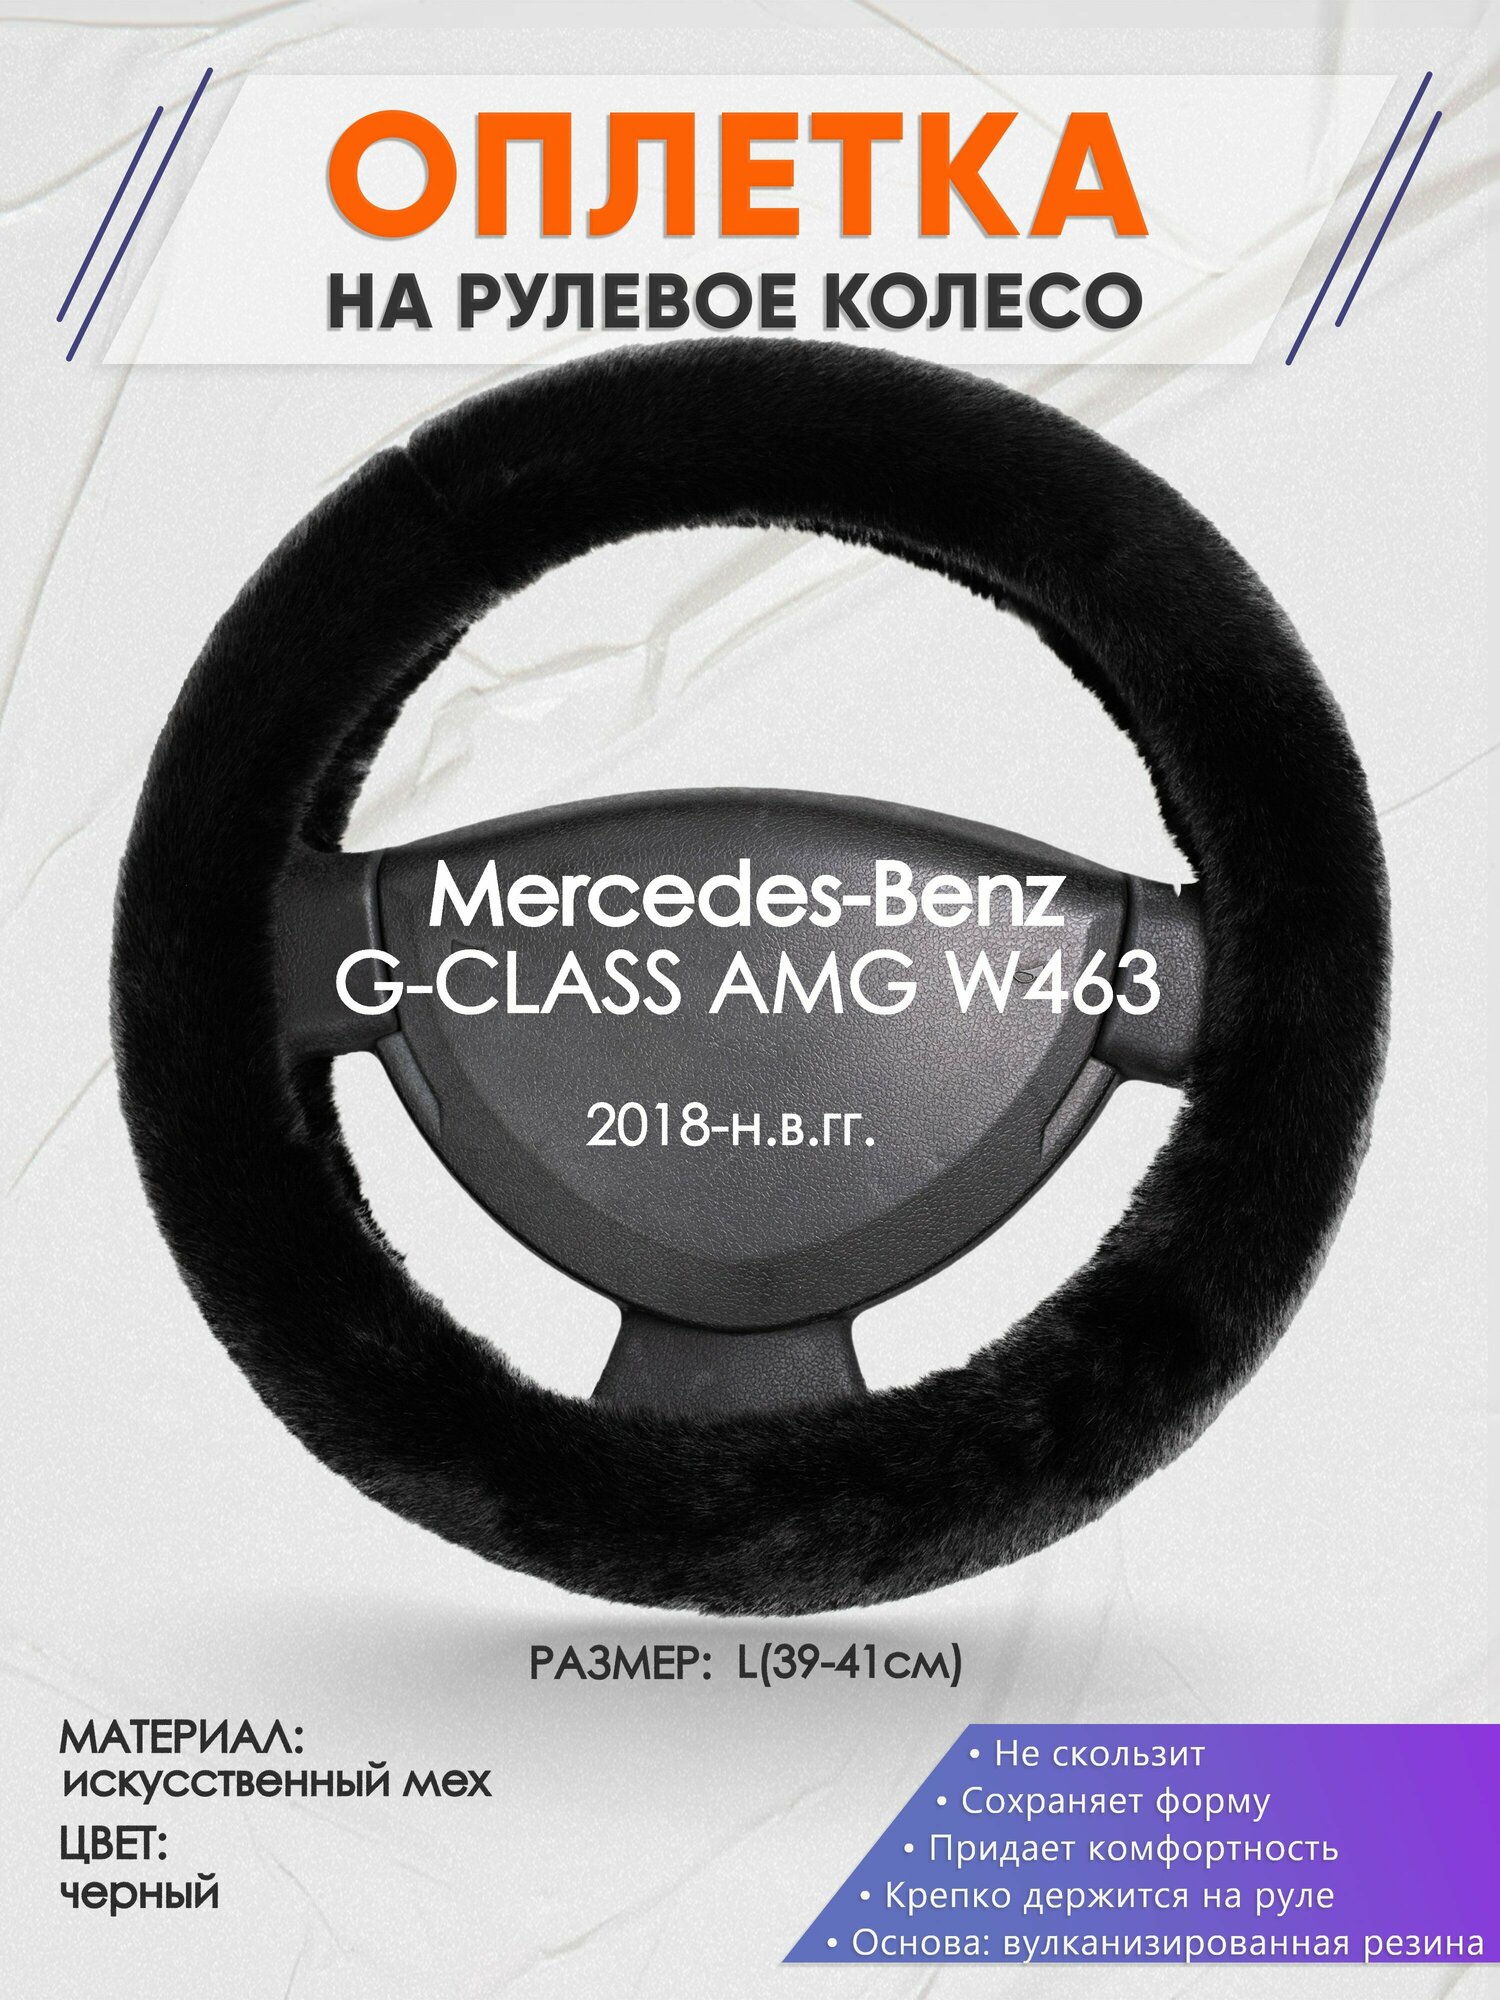 Оплетка на руль для Mercedes-Benz G-CLASS AMG W463(Мерседес Бенц Г Класс) 2018-н. в, L(39-41см), Искусственный мех 40